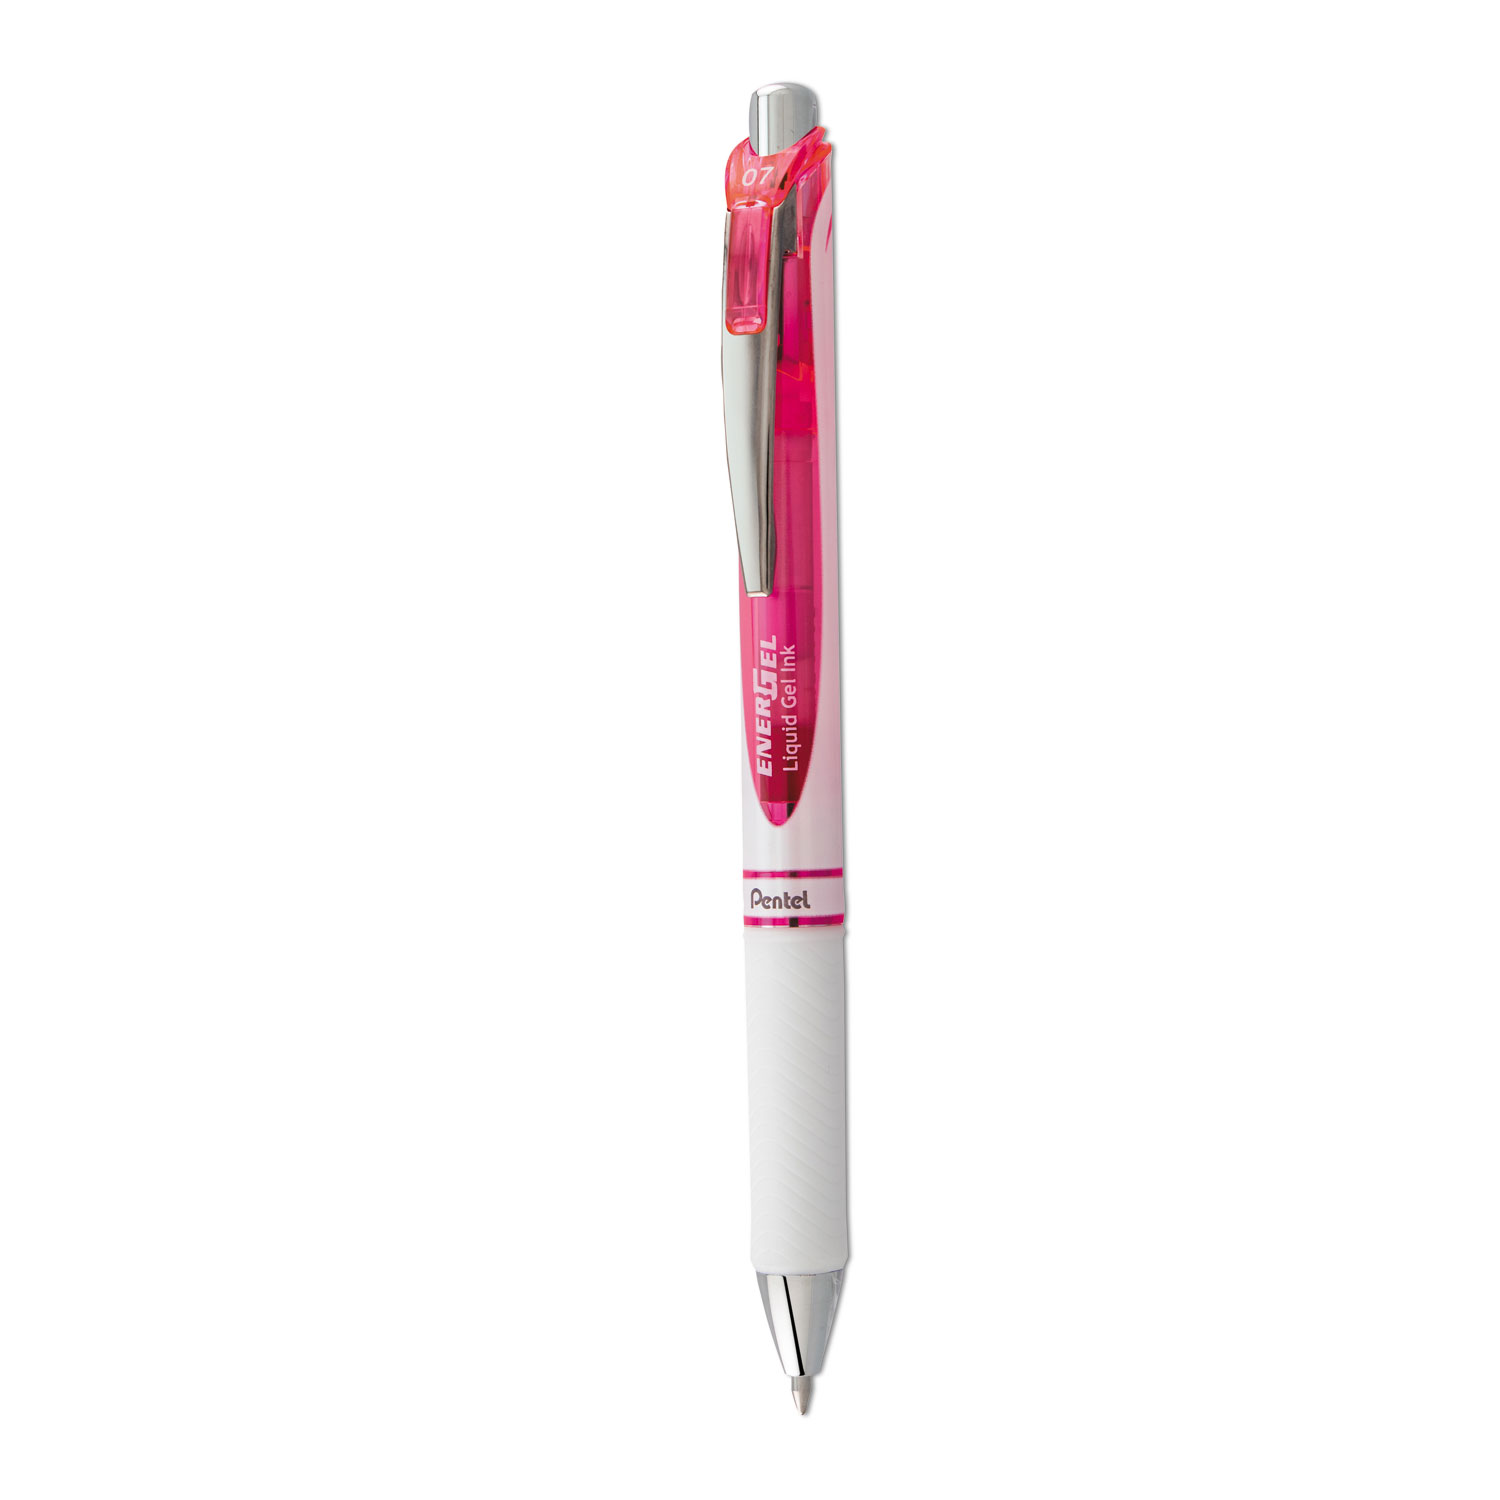 Pentel Energel Pearl Gel Pen, 0.7mm Medium, Needle Tip, Assorted Ink, 4 Pack